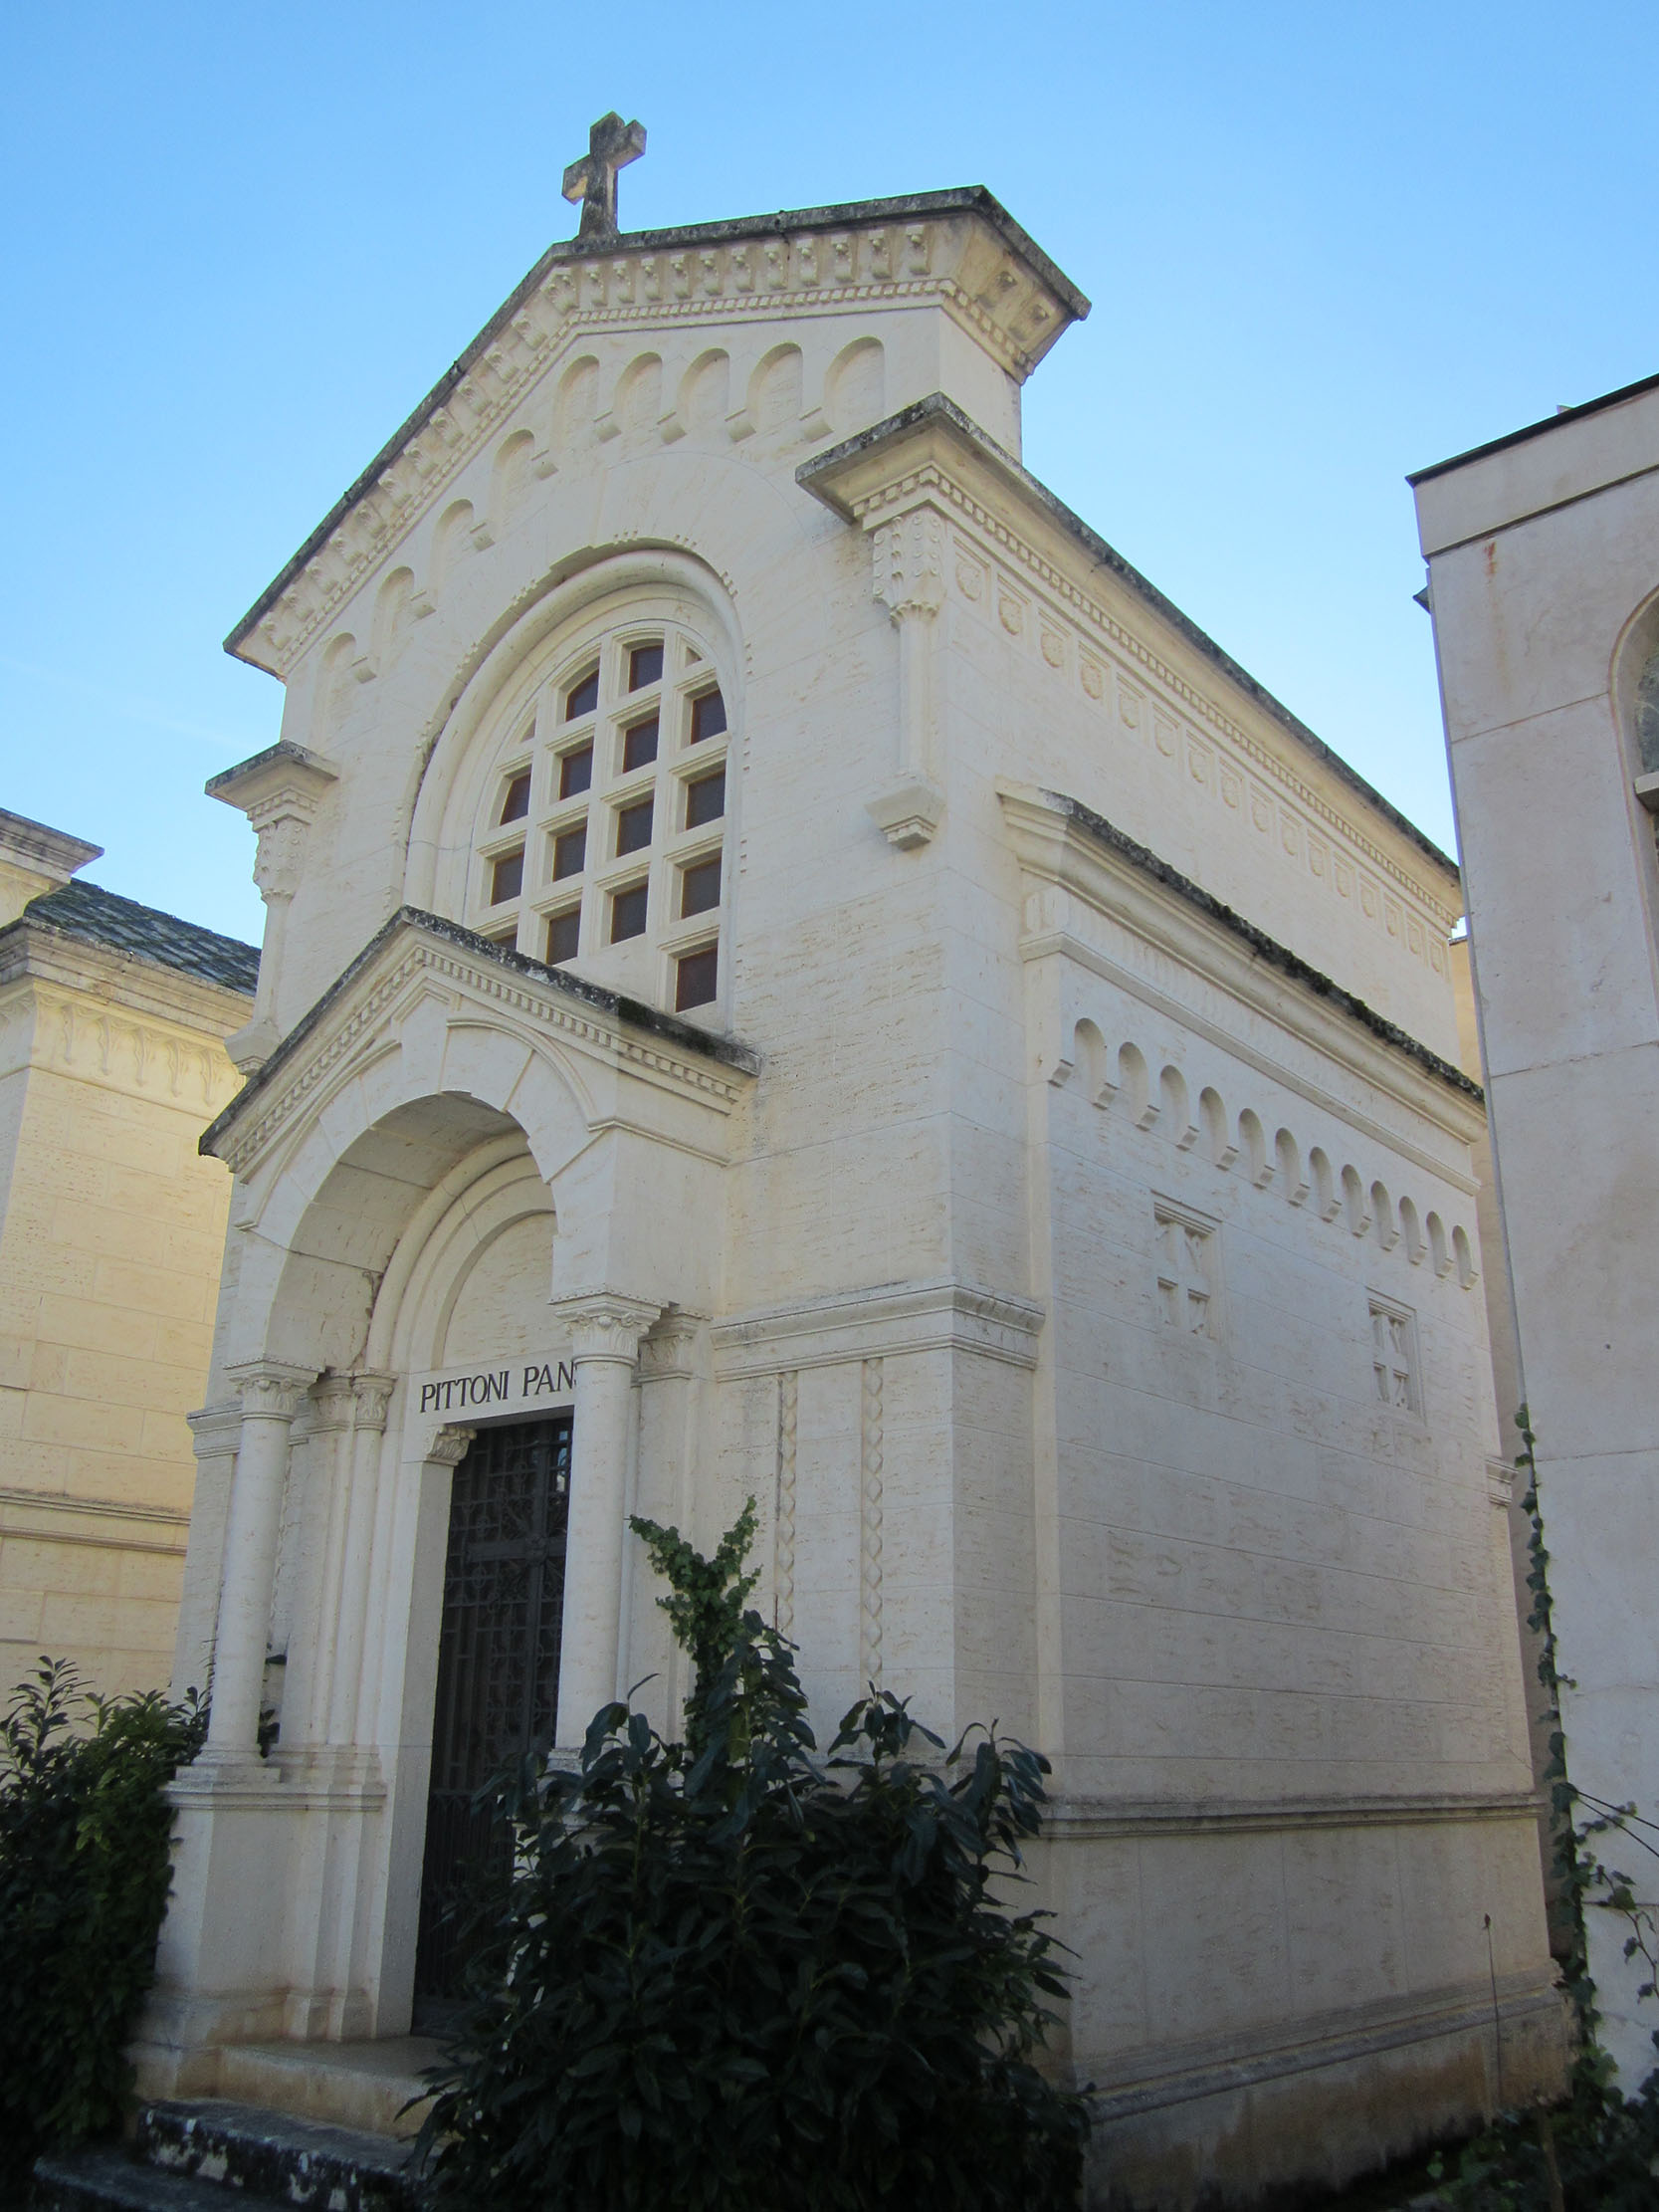 Cappella cimiteriale Pittoni Pansa (cimitero, monumentale) - Sulmona (AQ) 